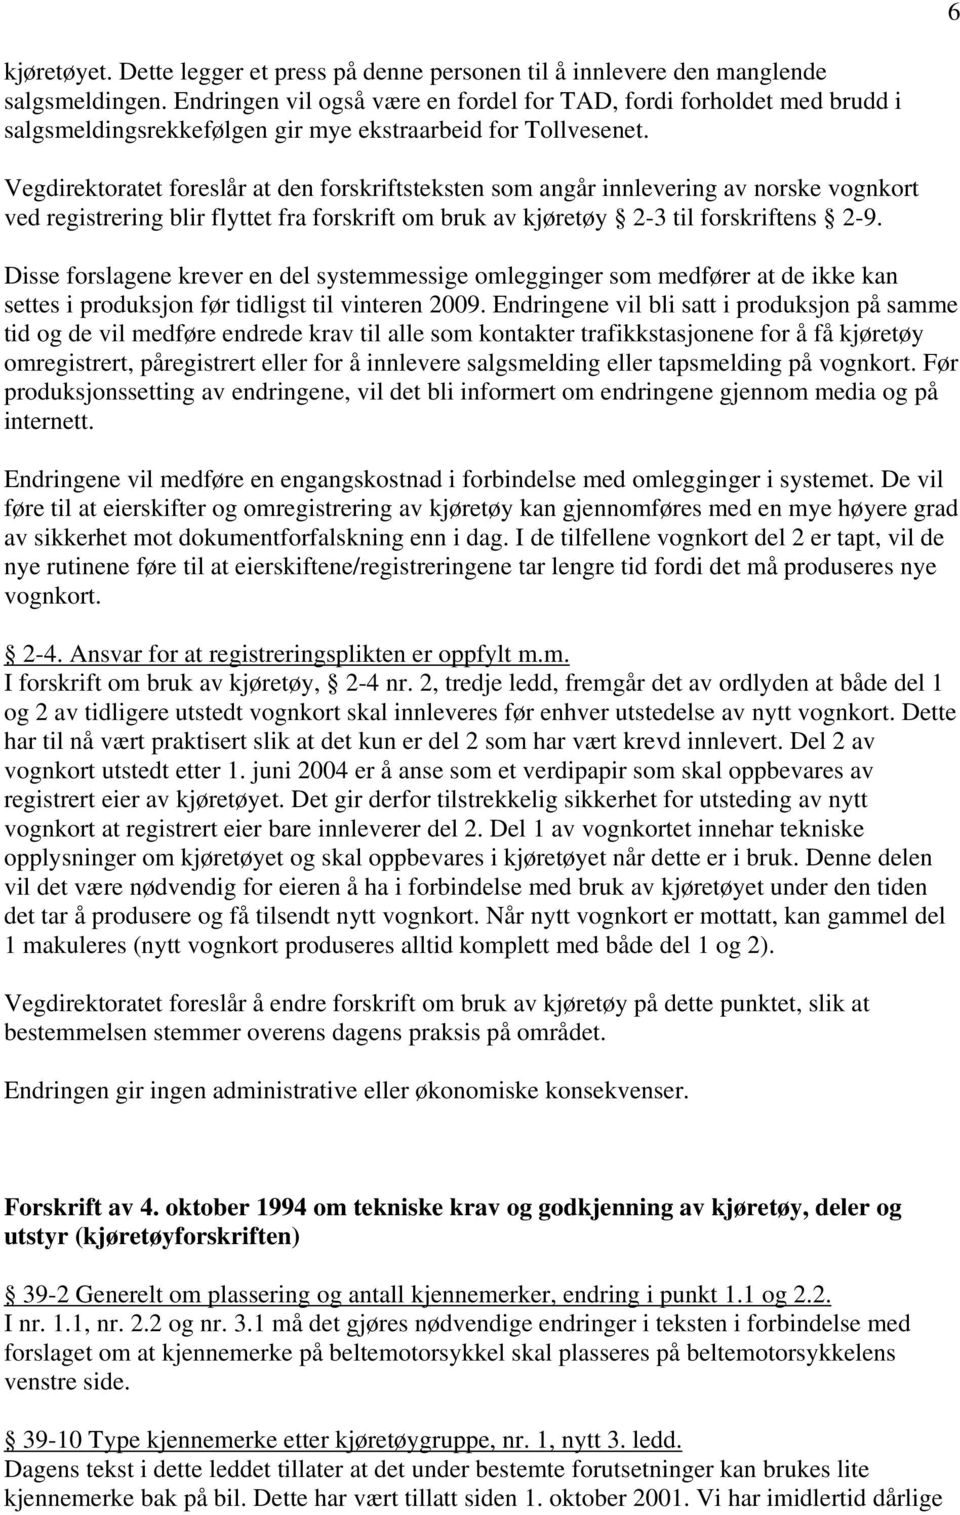 Statens vegvesen. Høring - endringer i kapittel 2 i forskrift om bruk av  kjøretøy og i kapittel 1 og 39 i Kjøretøyforskriften - PDF Gratis nedlasting